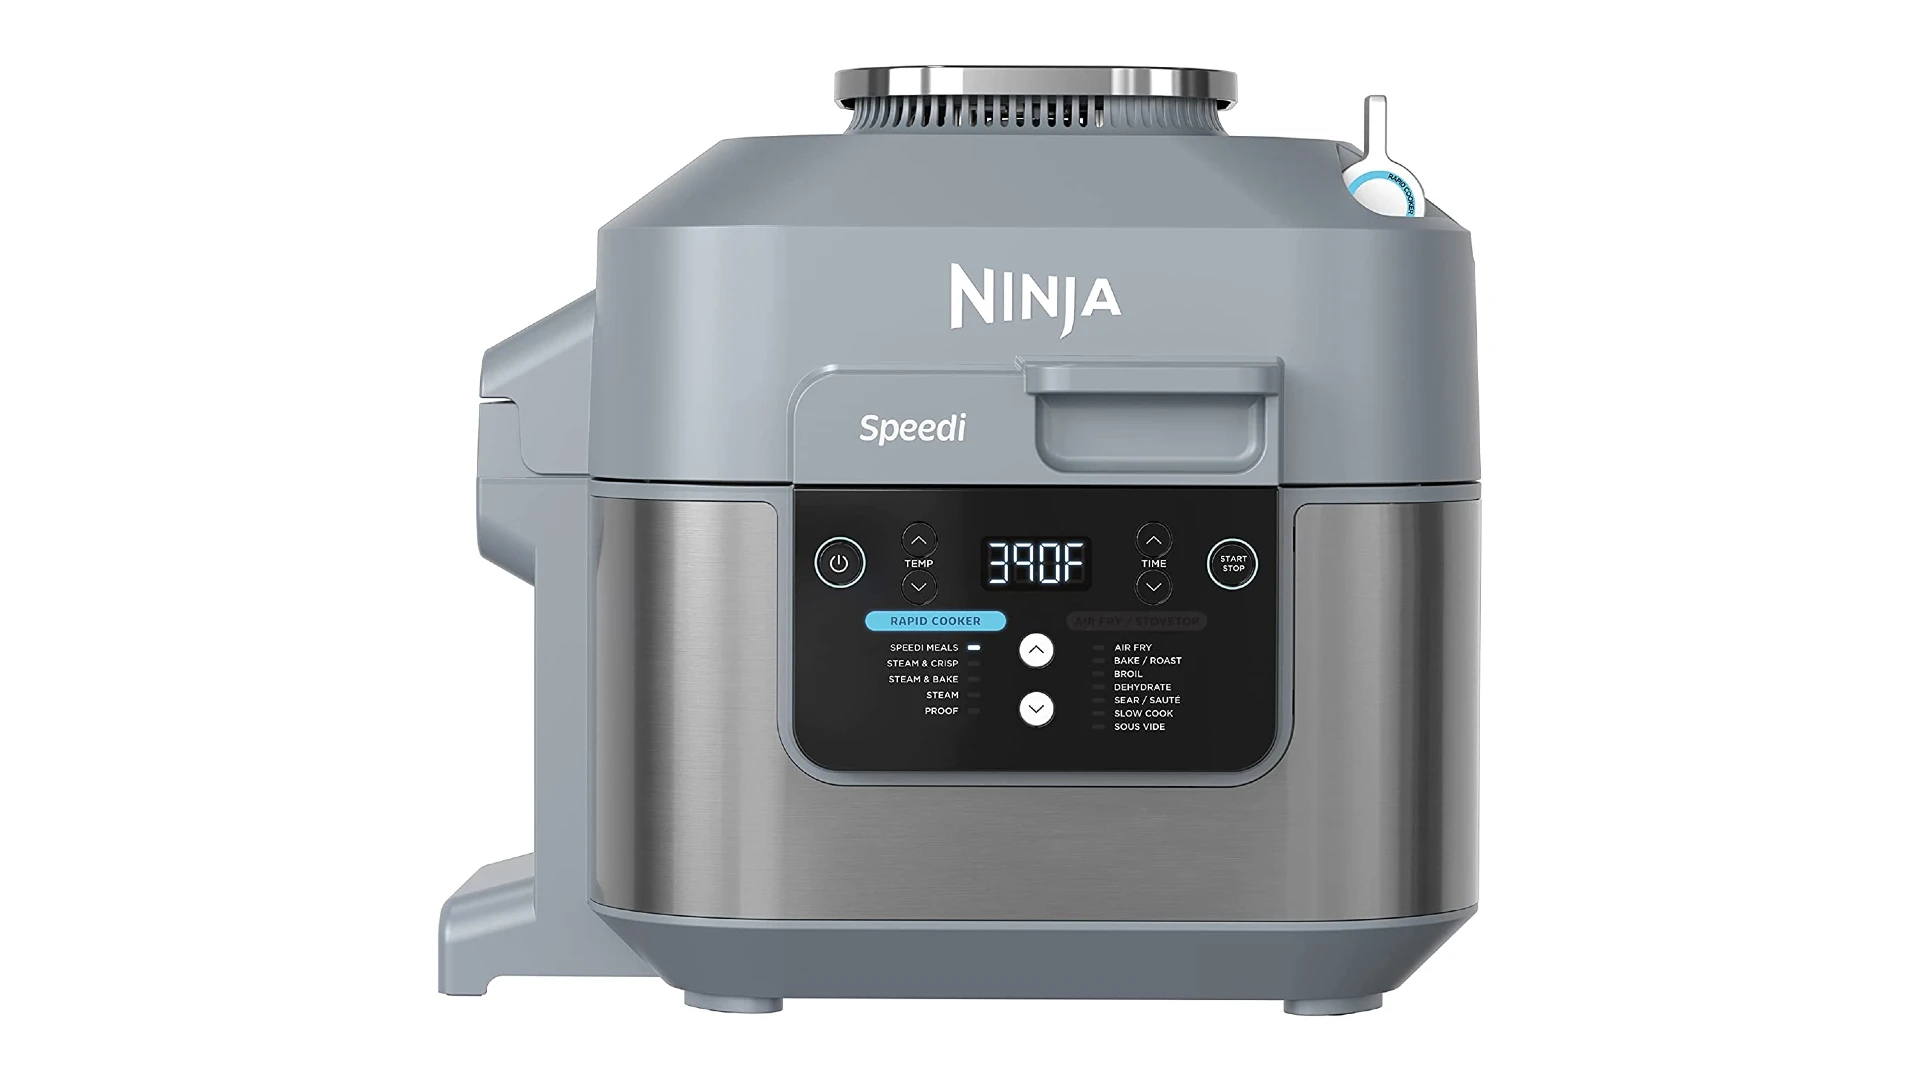 Ninja SF301 Rapid Cooker & Air Fryer